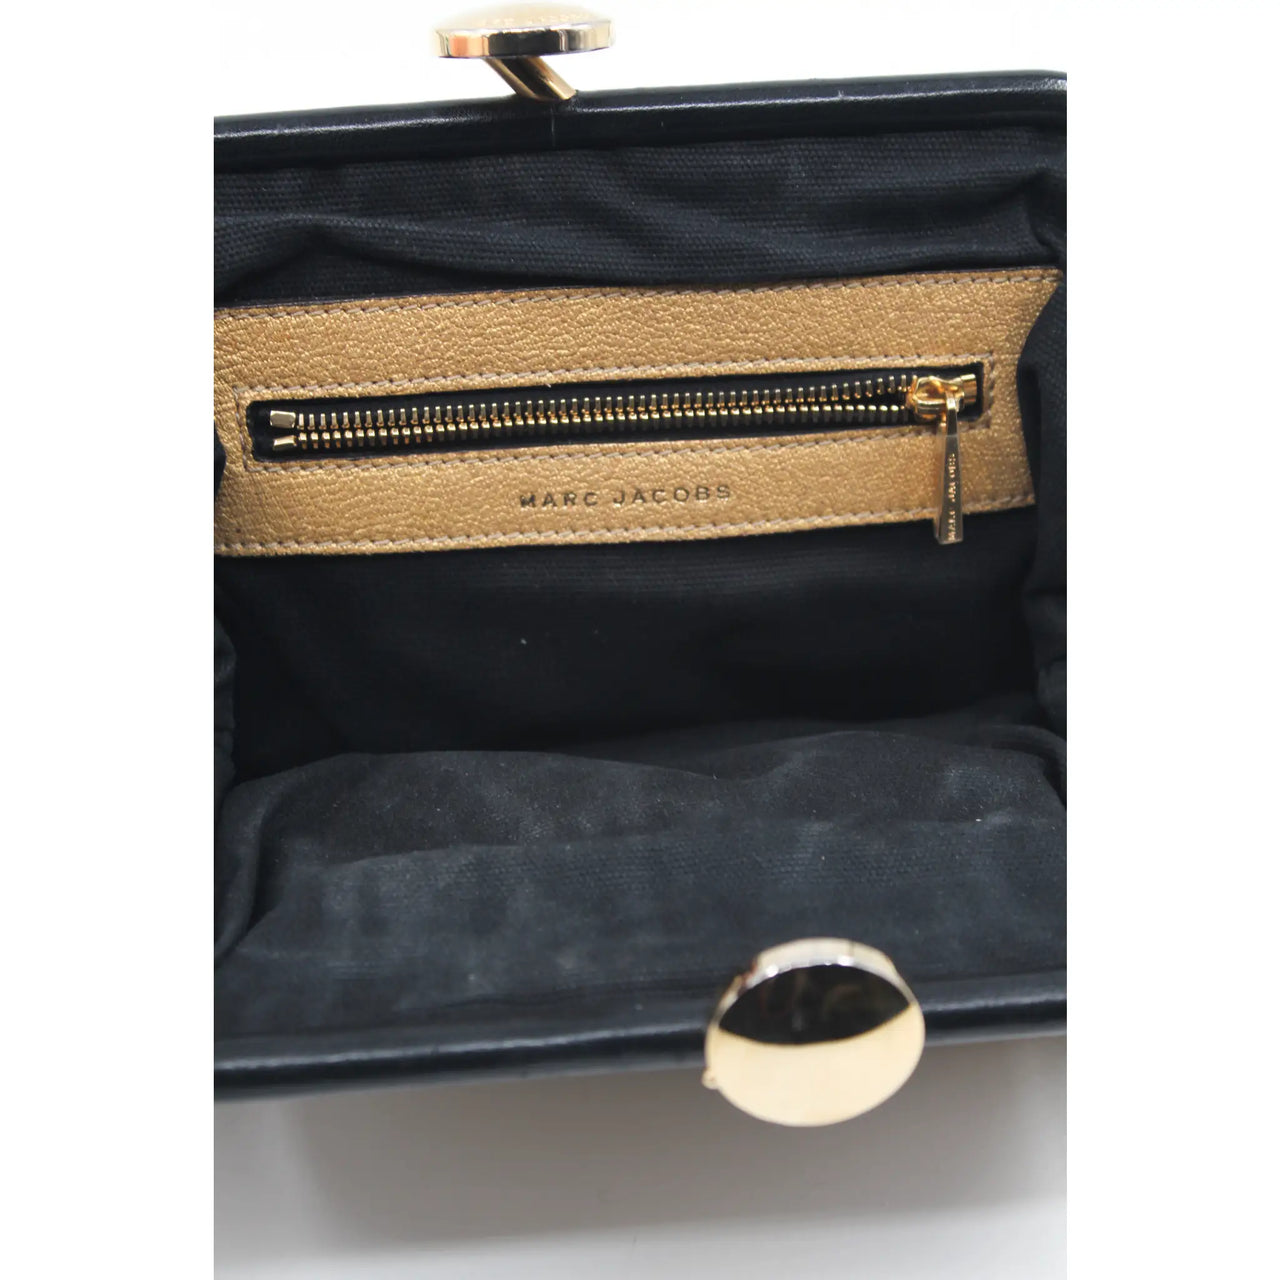 New Vintage Gold Marc Jacobs Evening Bag Clutch Shoulder Bag